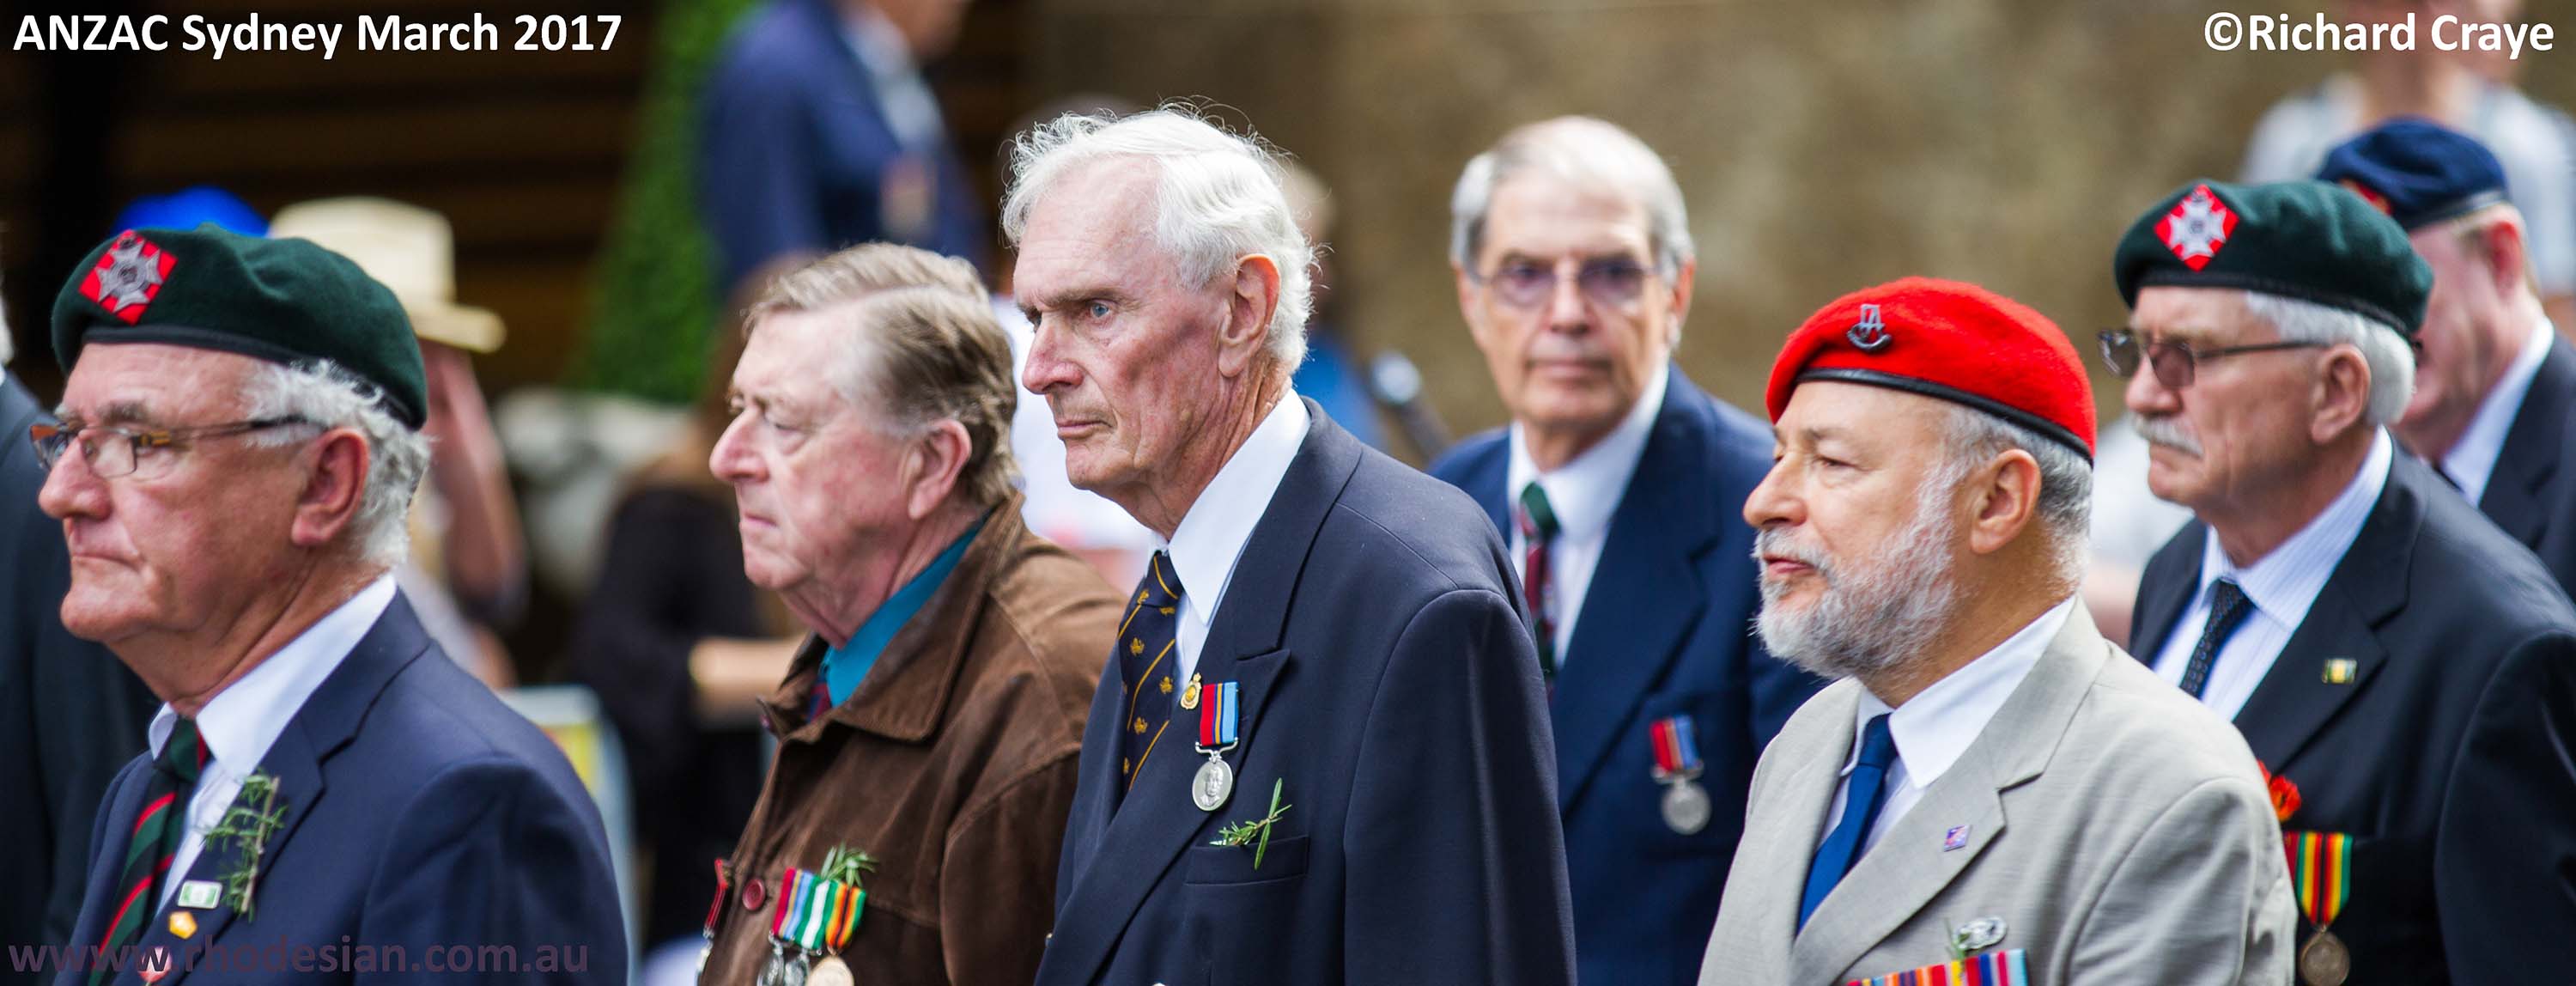 Rhodesian veterans in ANZAC Day March in 2017 in Sydney on www.rhodesian.com.au